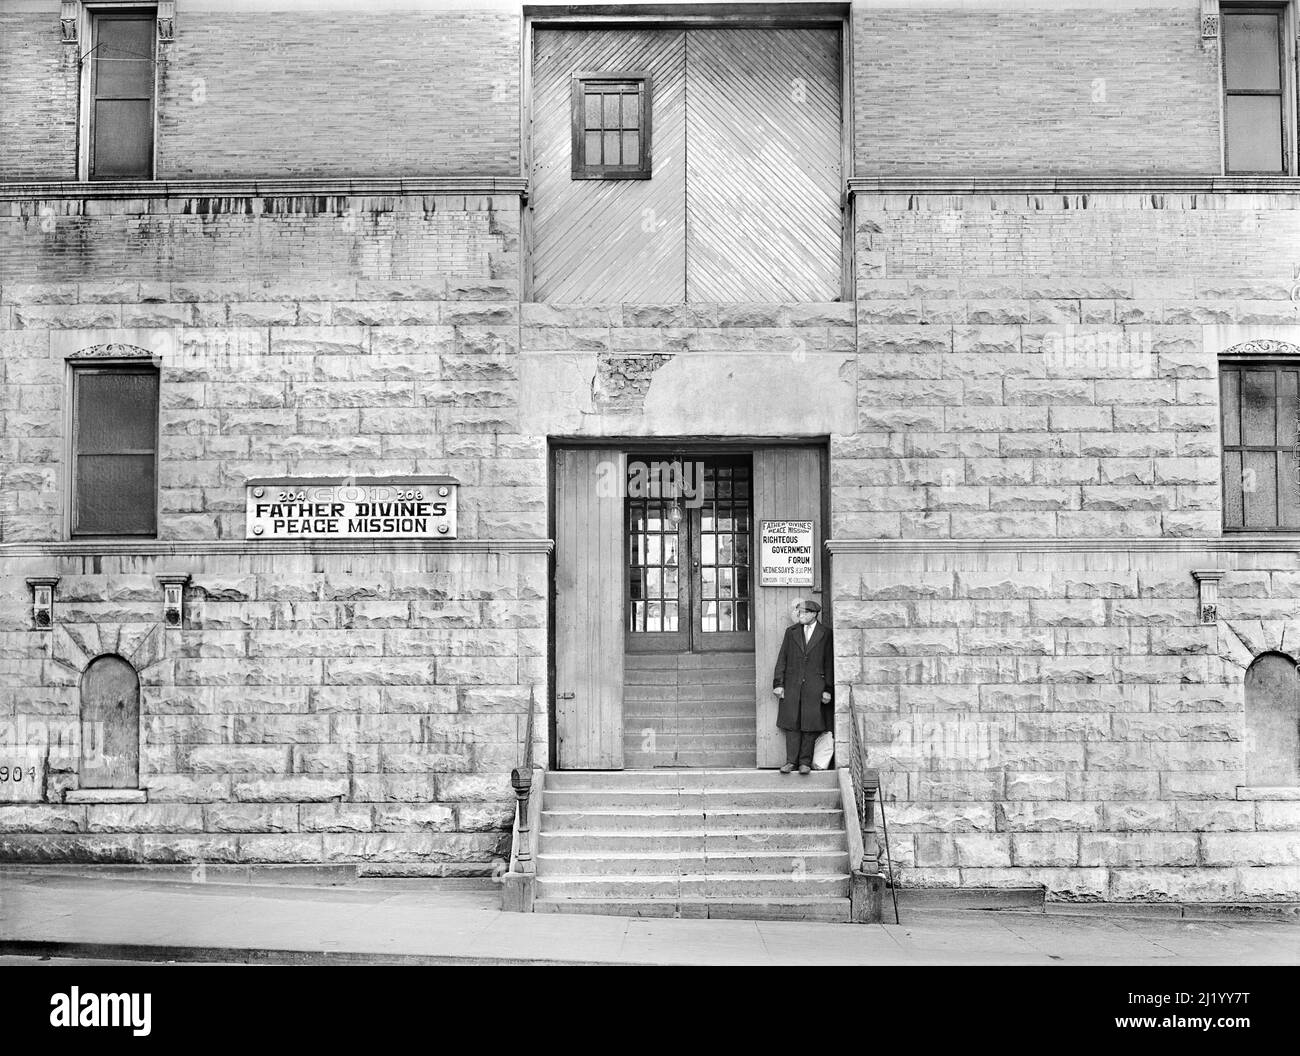 Hombre de pie en pasos de la misión de paz del Padre Divino, Harlem, Nueva York, Nueva York, EE.UU., Edwin Rosskam, Administración de Seguridad Agrícola de EE.UU./EE.UU Office of War Information, diciembre de 1941 Foto de stock